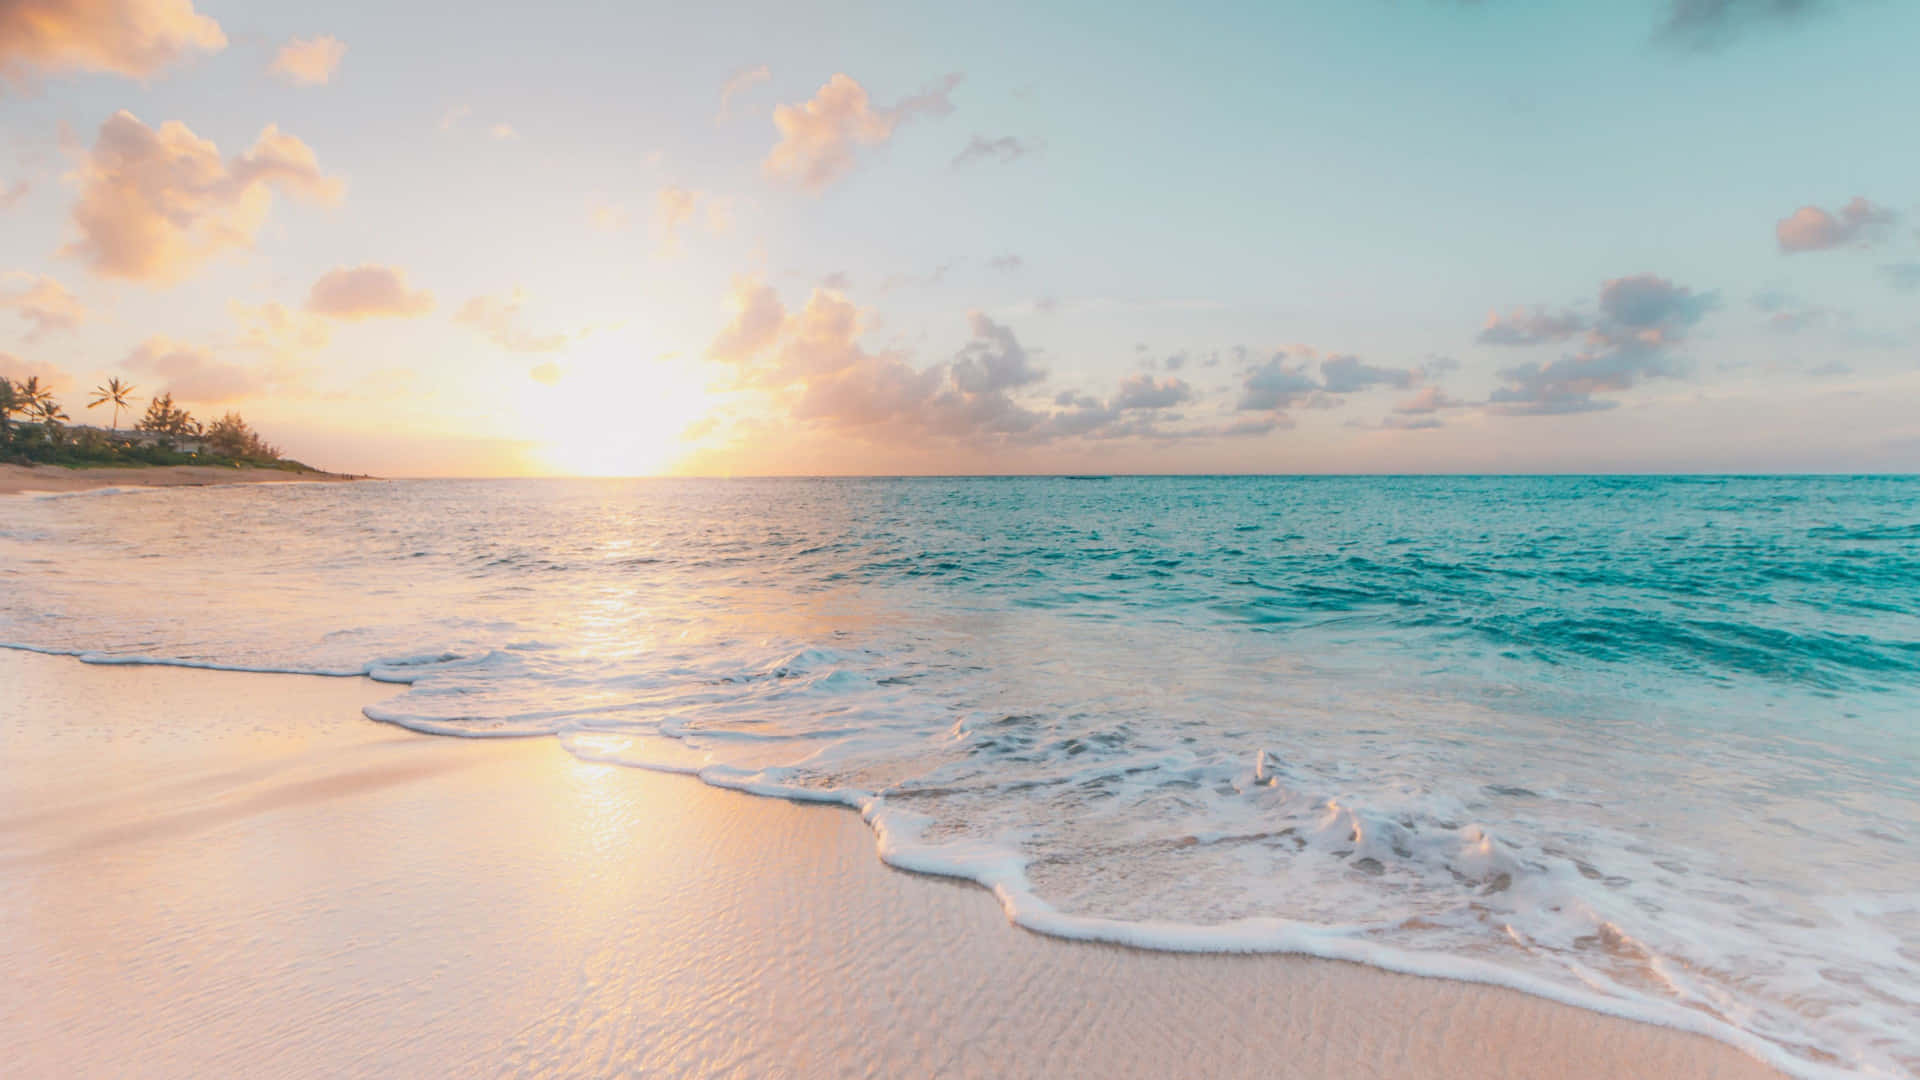 Nếu bạn yêu thích cảm giác lướt sóng và tận hưởng bầu không khí biển cả, hãy xem hình nền Zoom Beach của chúng tôi. Với các hình ảnh tuần hoàn tuyệt đẹp của cát trắng, nước biển trong xanh, bạn sẽ cảm thấy như đang ở đó ngay trên Zoom.